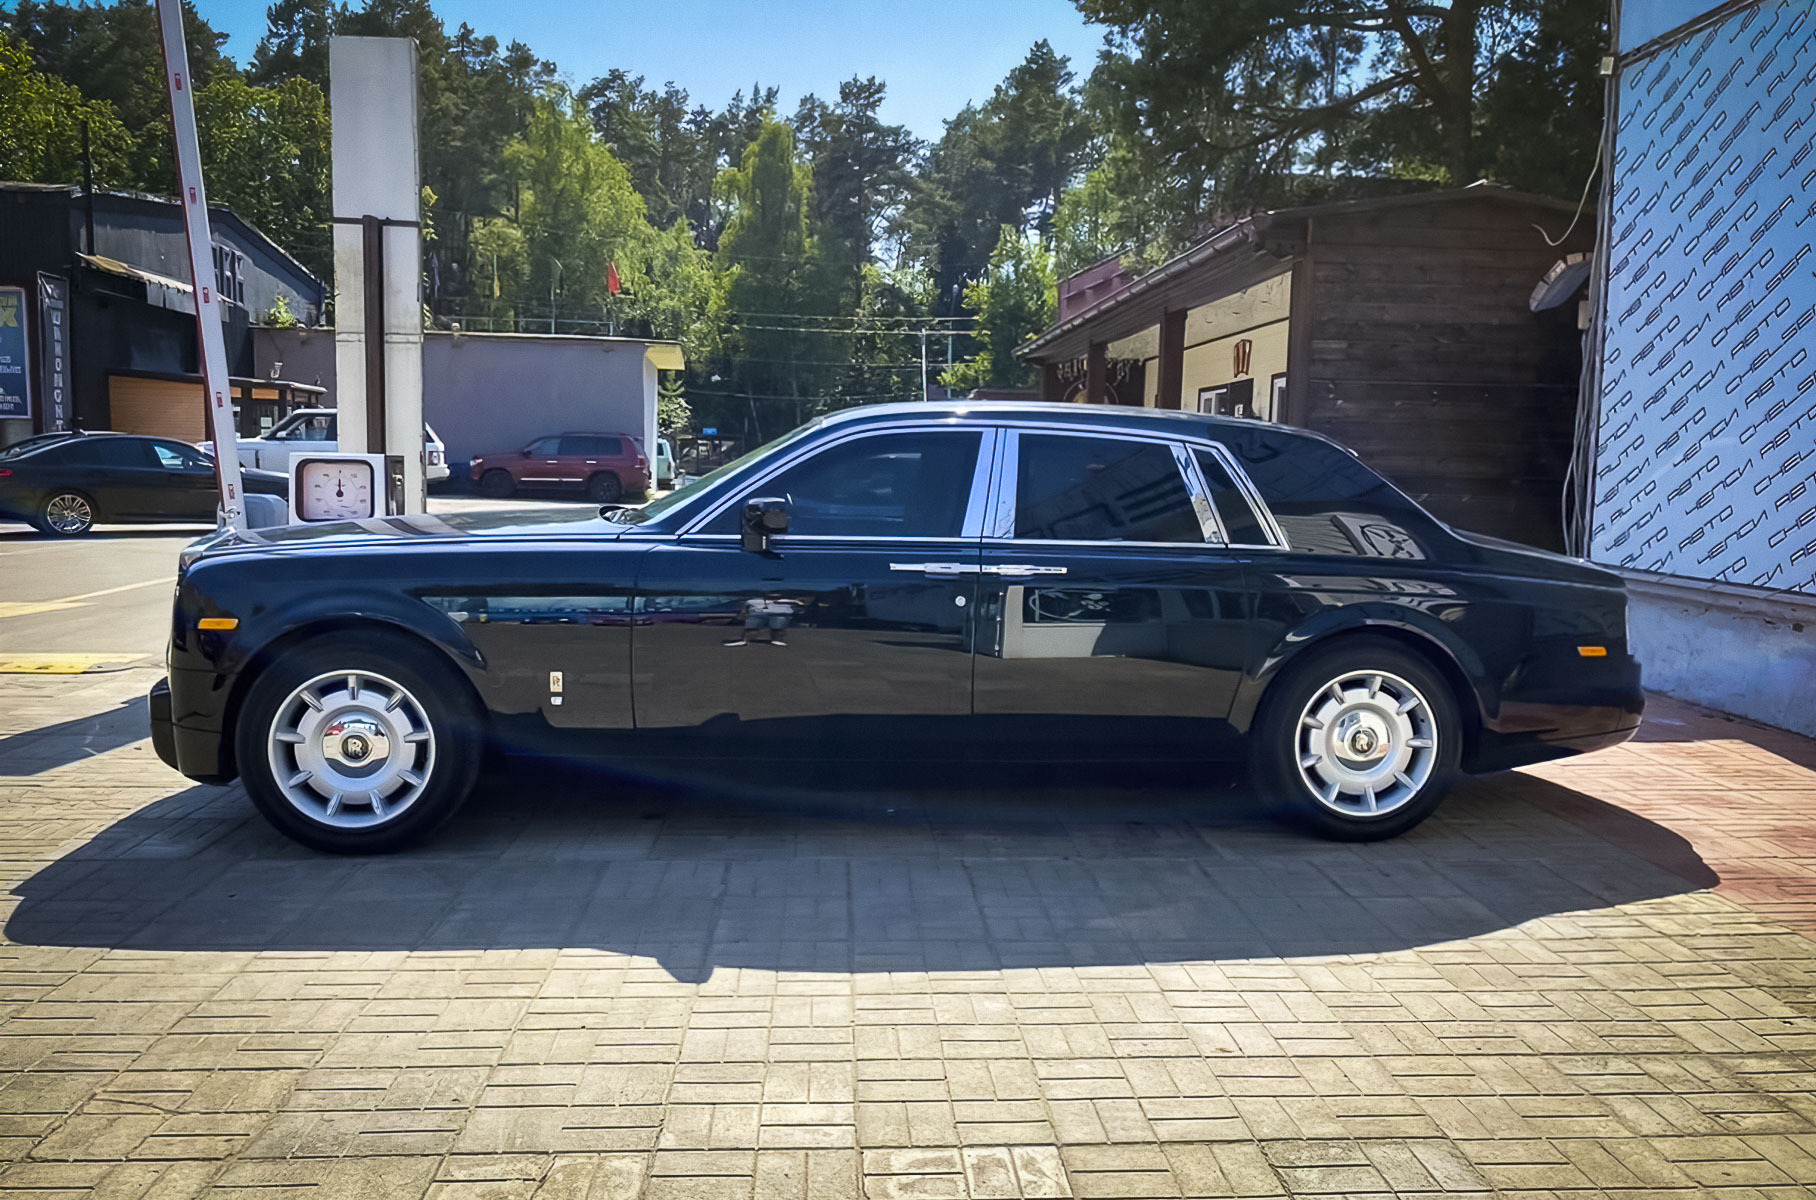 Посмотрите на самый доргой Rolls-Royce Phantom в России